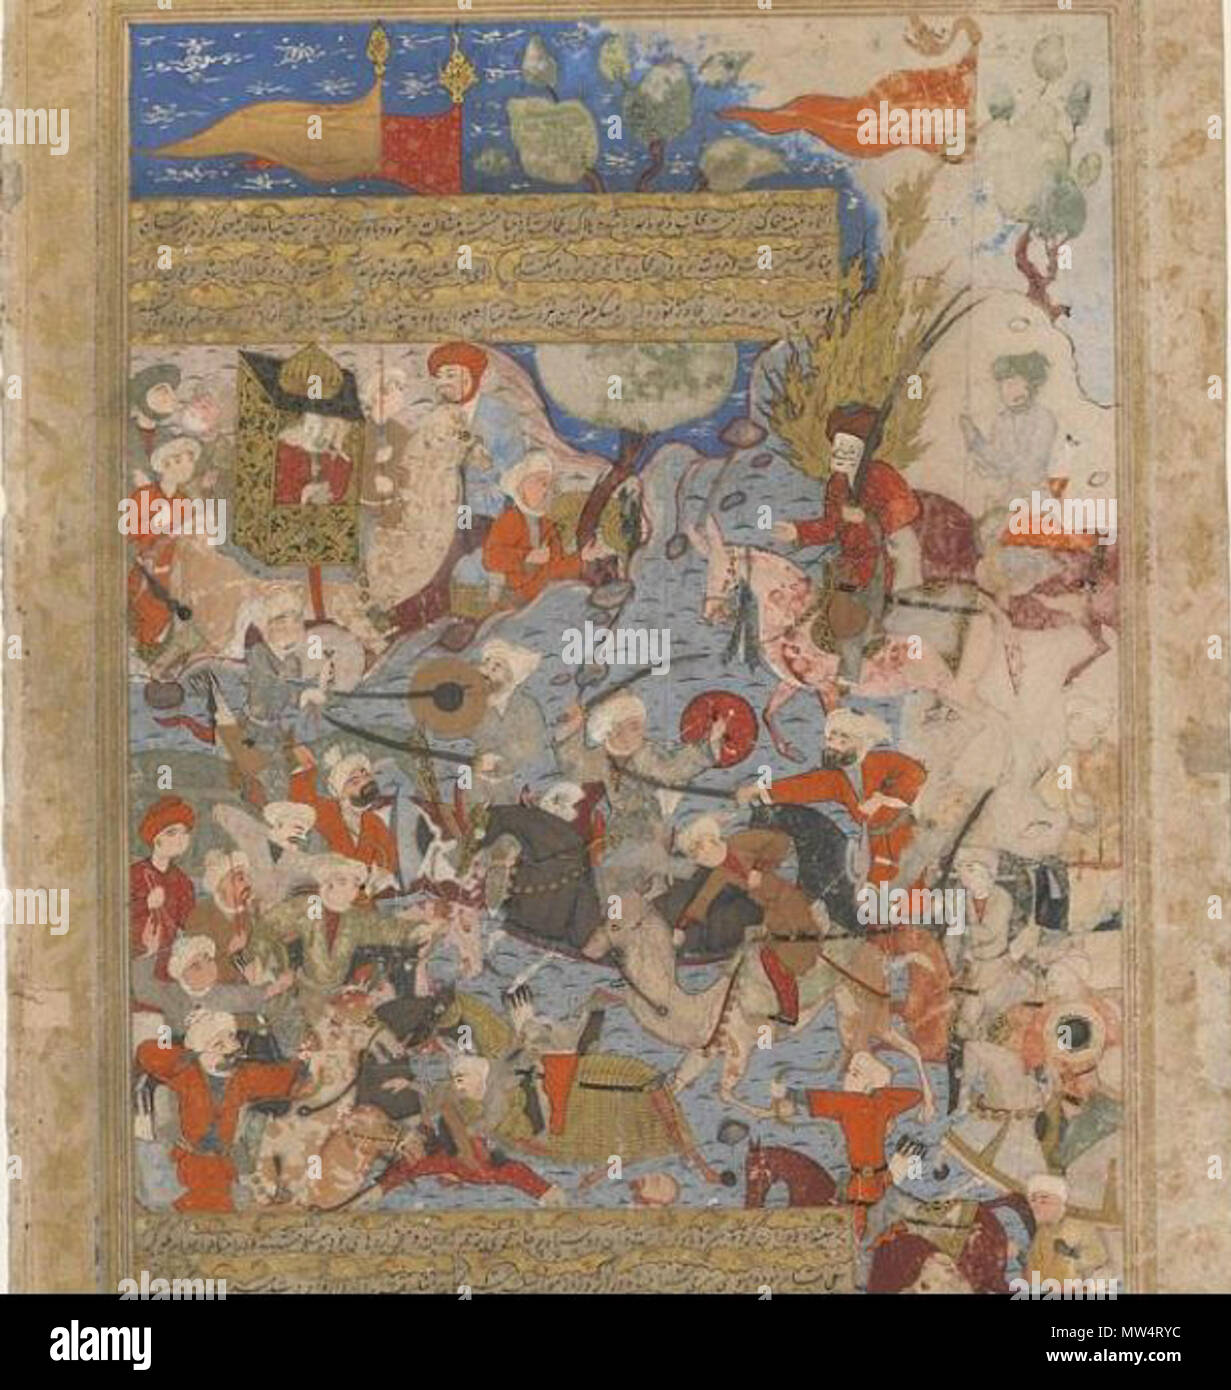 . Inglese: Folio da un Rawdat al-Safa (giardino di felicity) da Mirkhwand (d. 1498); tergo: Ali e Aisha alla battaglia del cammello; recto: 1571-1572 Testo periodo di Safavid acquerello opaco, inchiostro e oro su carta H: 41,3 W: 27,6 cm Shiraz, Iran . Il 10 luglio 2014, 16:45:29. Mirkhwand (d. 1498) 76 battaglia del cammello dalla Mirkhwand Foto Stock